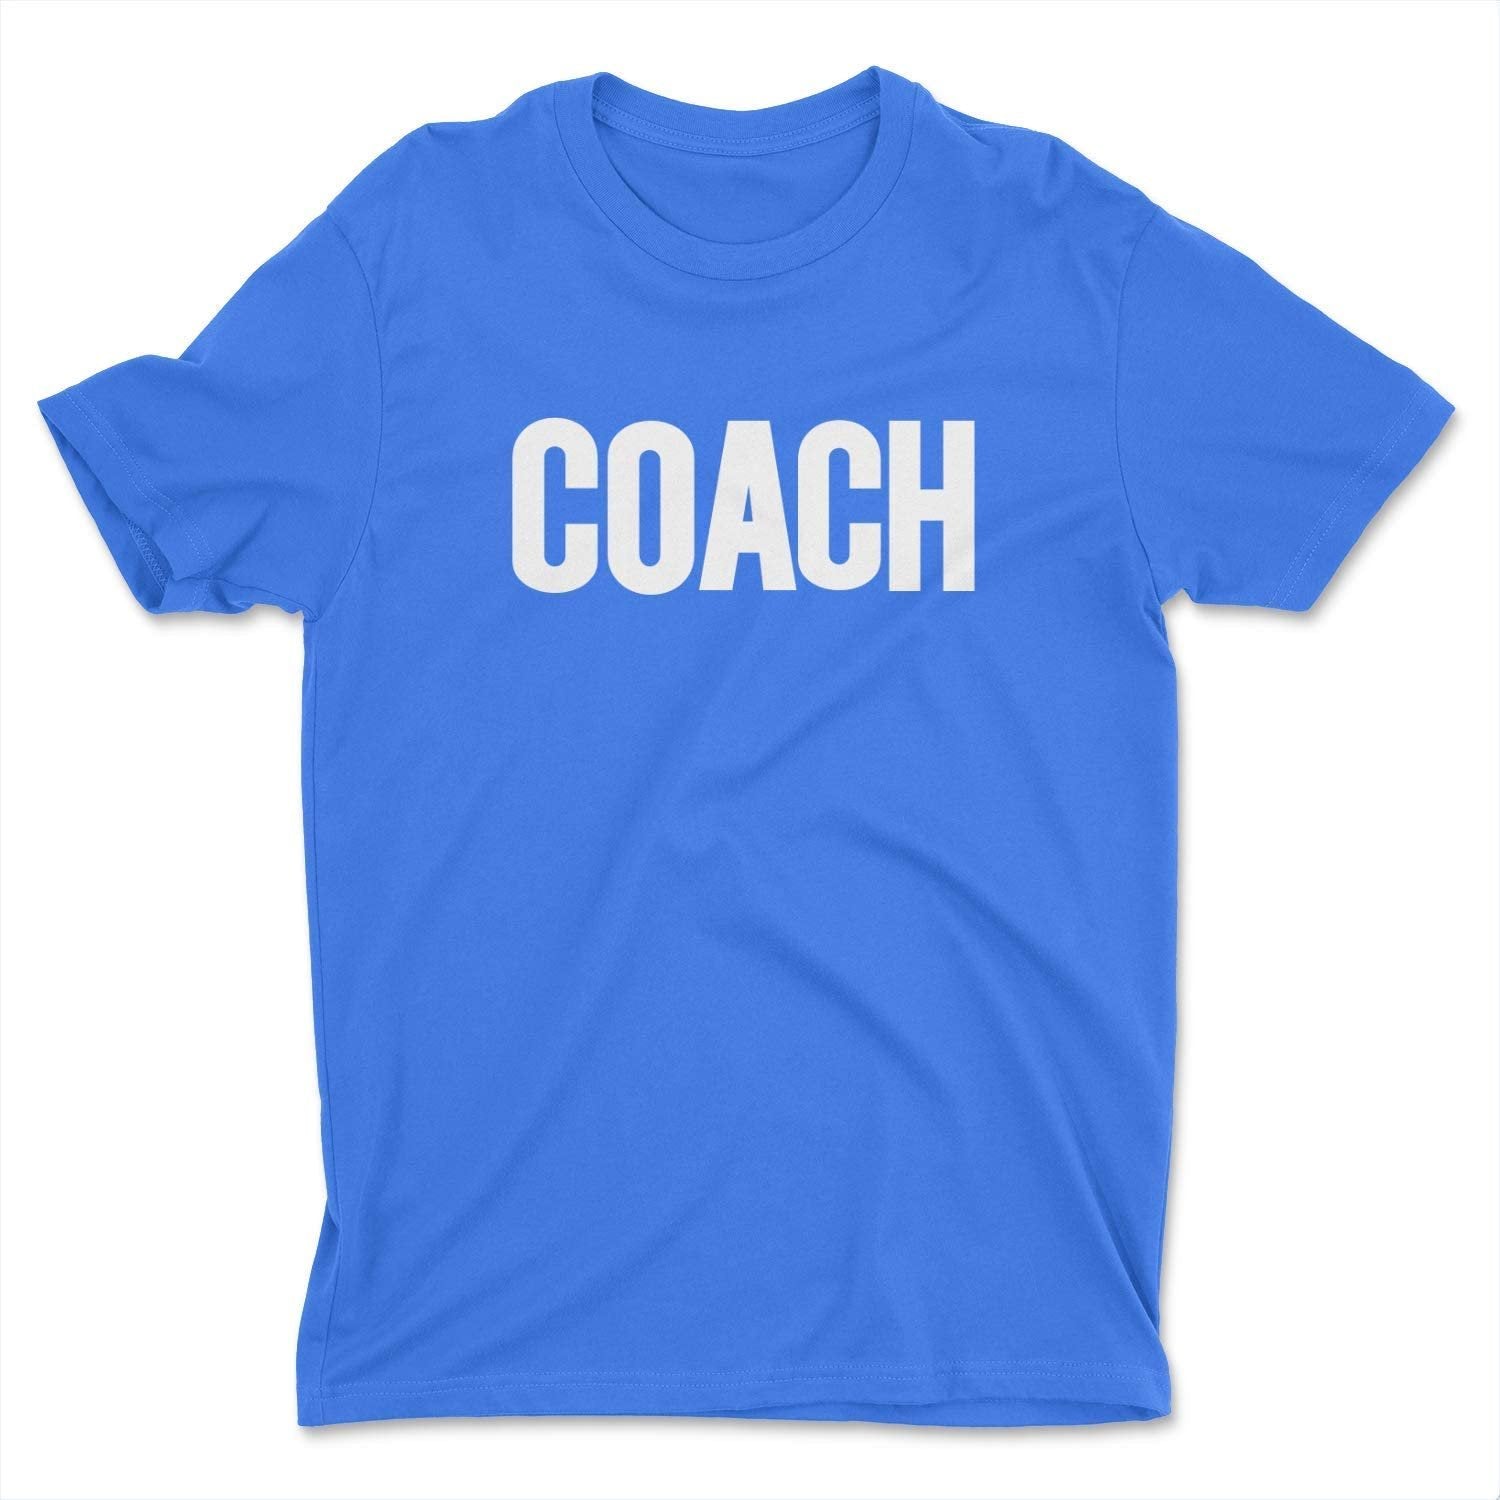 Coach Men's T-Shirt (Solid Design, Royal Blue & White)